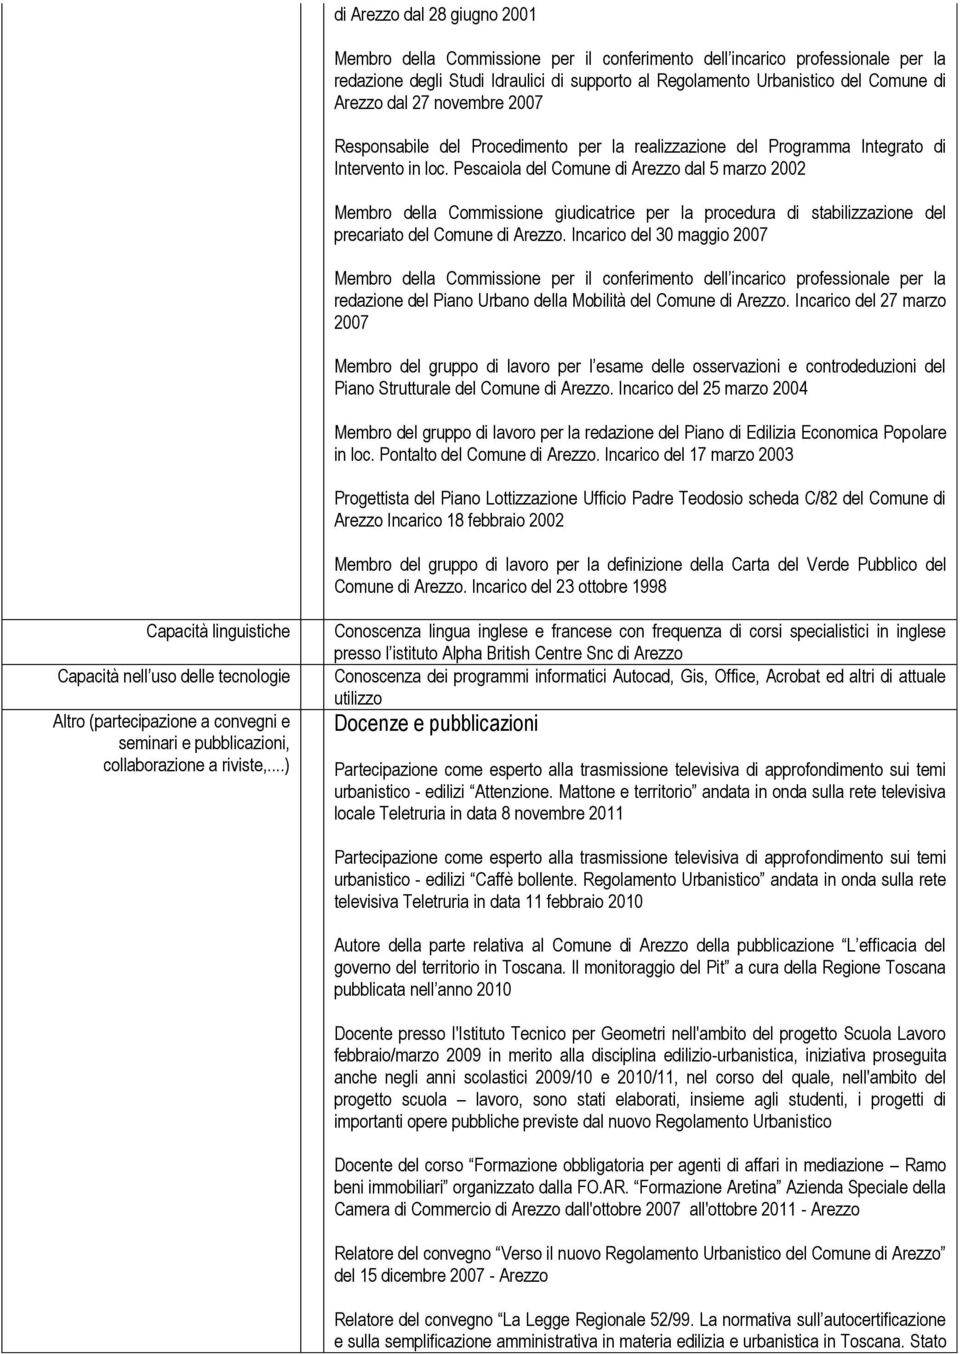 Pescaiola del Comune di Arezzo dal 5 marzo 2002 Membro della Commissione giudicatrice per la procedura di stabilizzazione del precariato del Comune di Arezzo.